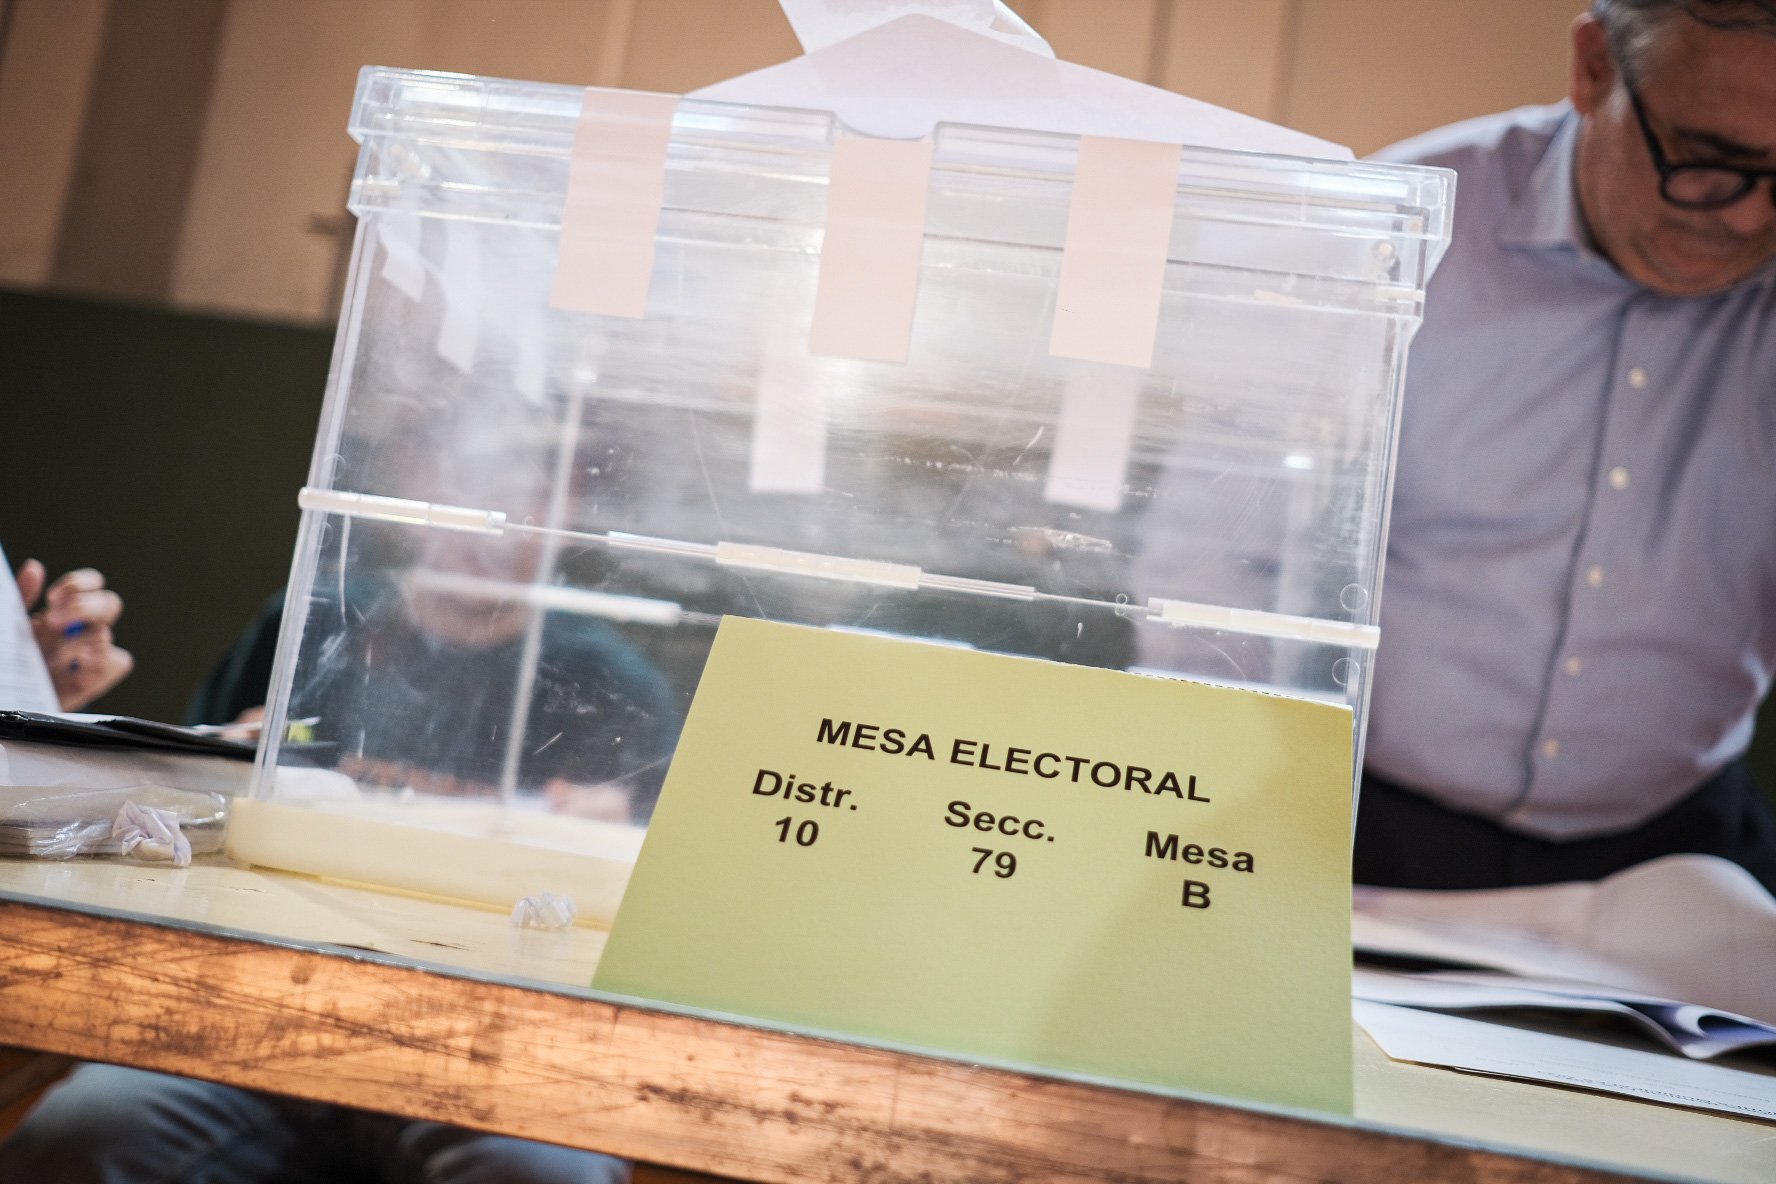 Els problemes del 23-J: a Ponferrada només s'ha pogut constituir 1 de les 84 meses electorals